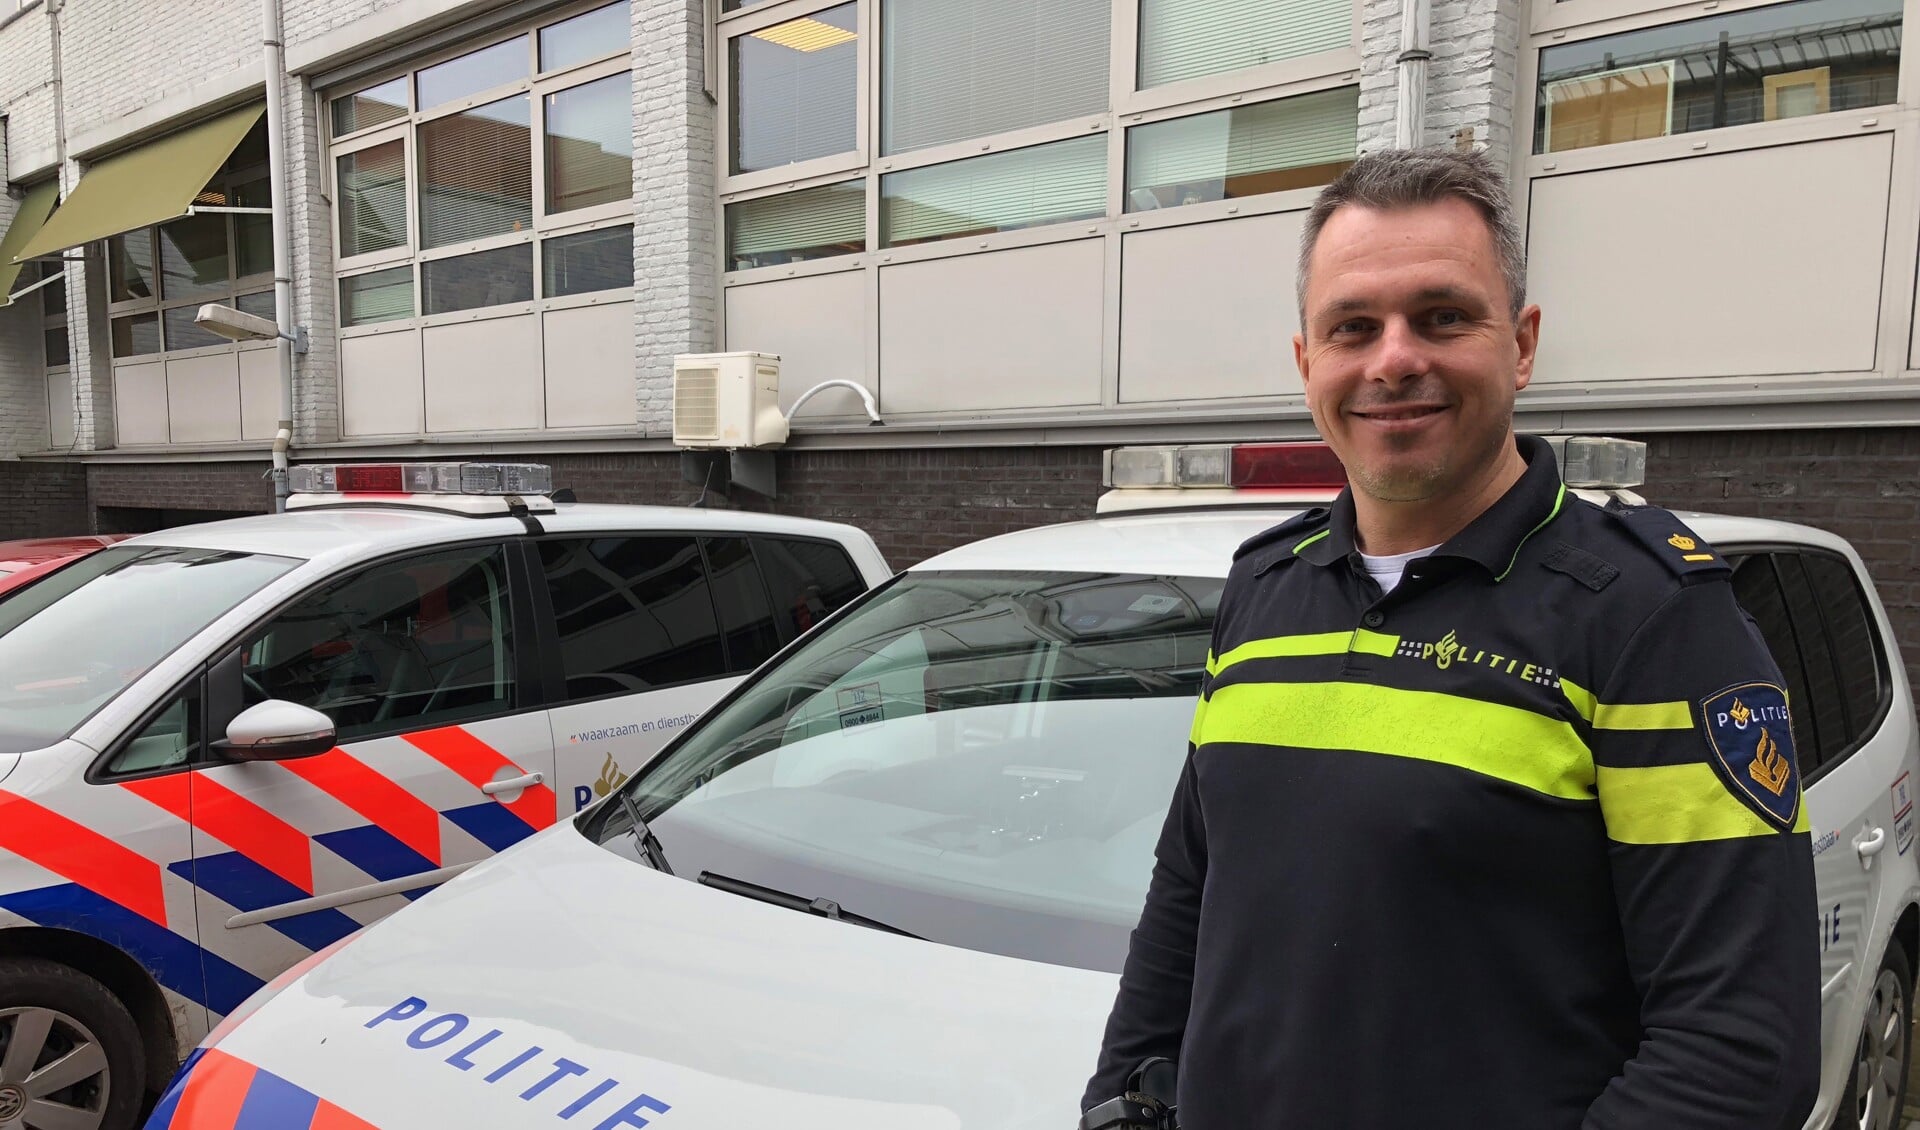 Politiechef Peter van den Berg van de Edese politie.